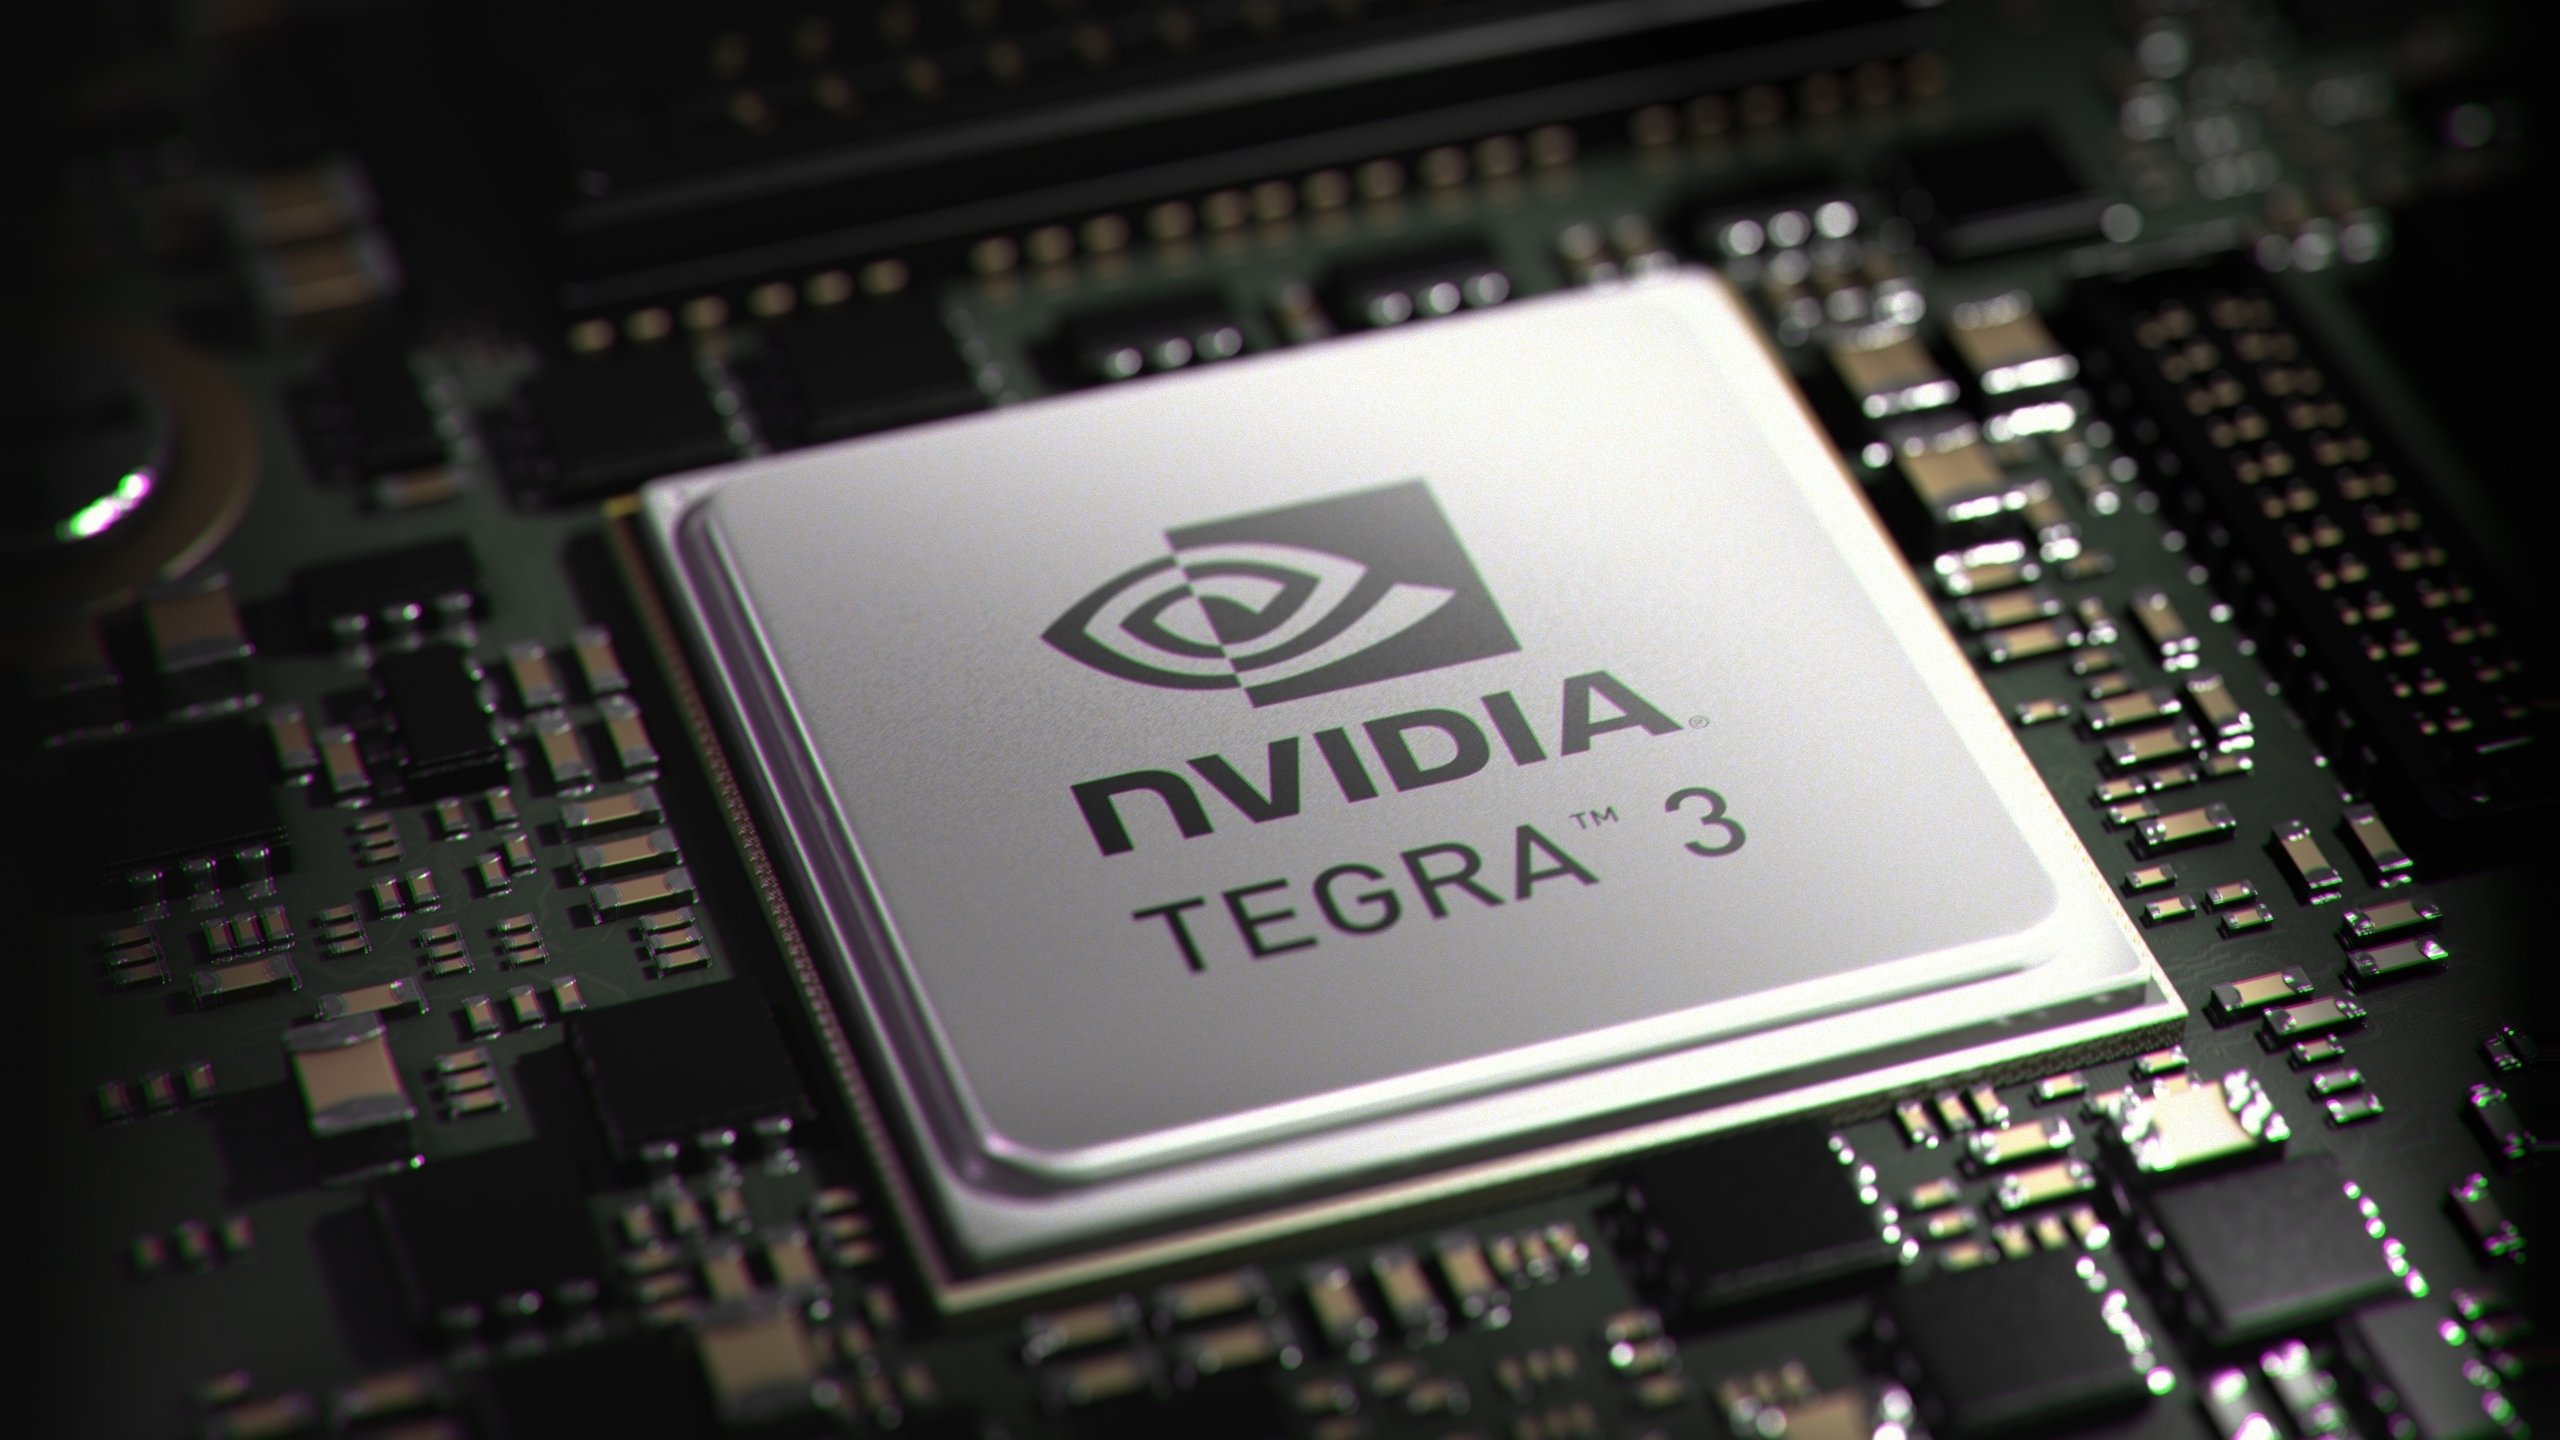 nVidia Tegra 3 for 2560x1440 HDTV resolution